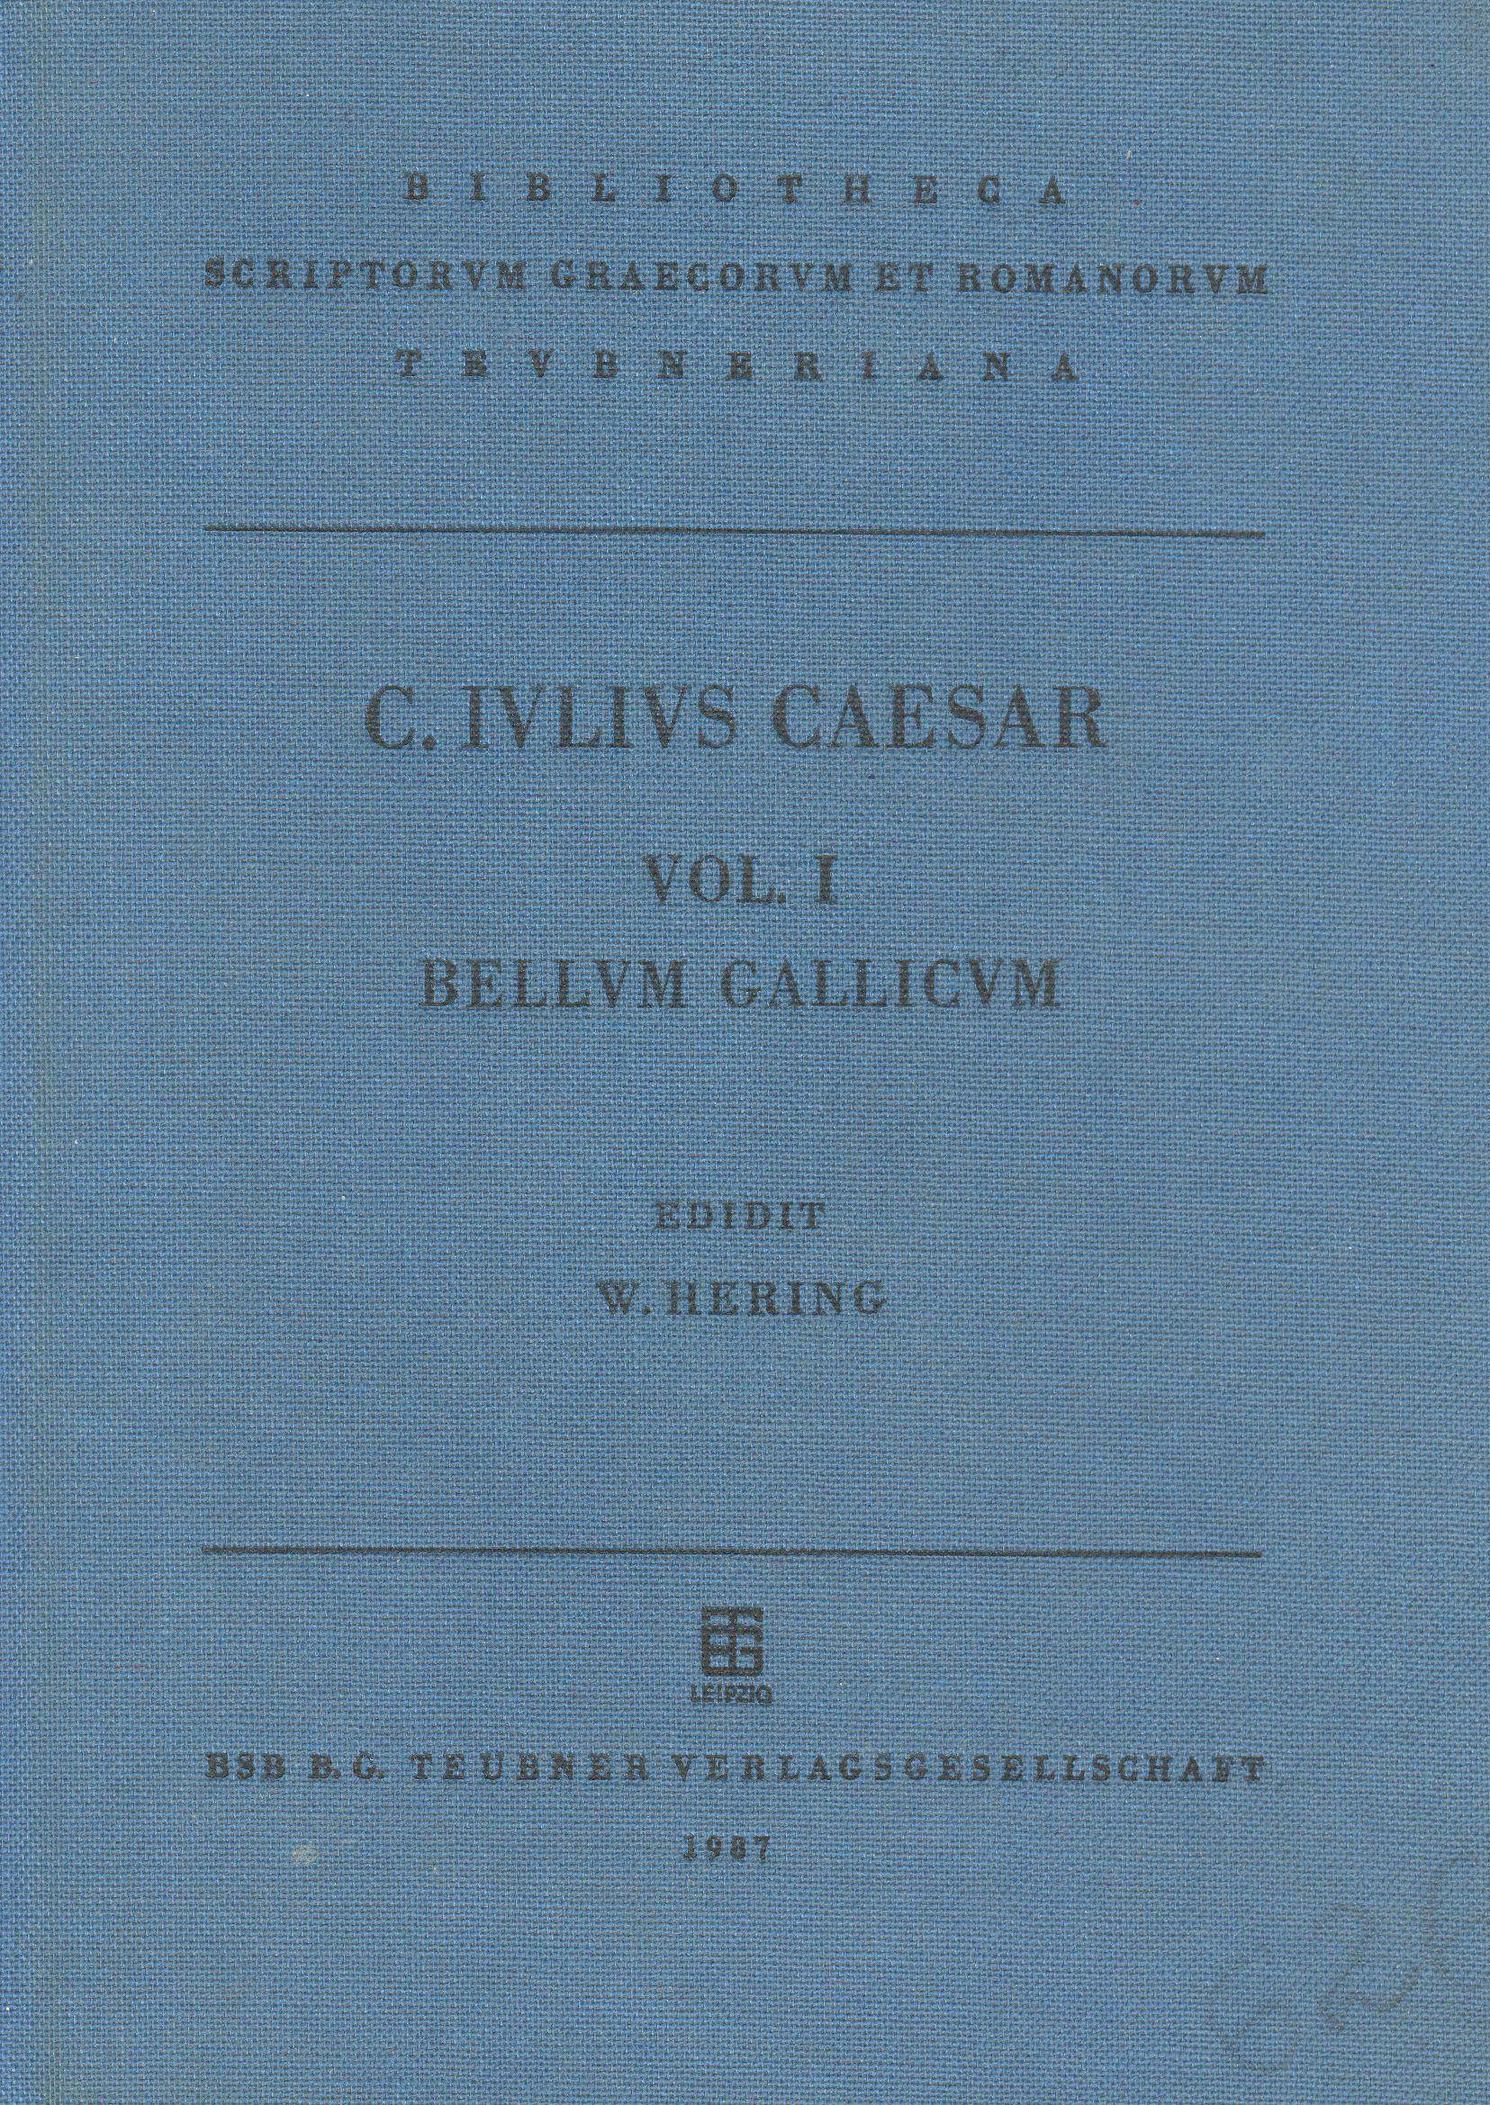 Caesaris, C. Iulii, Commentarii Rerum Gestarum Vol. I. Bellum Gallicum